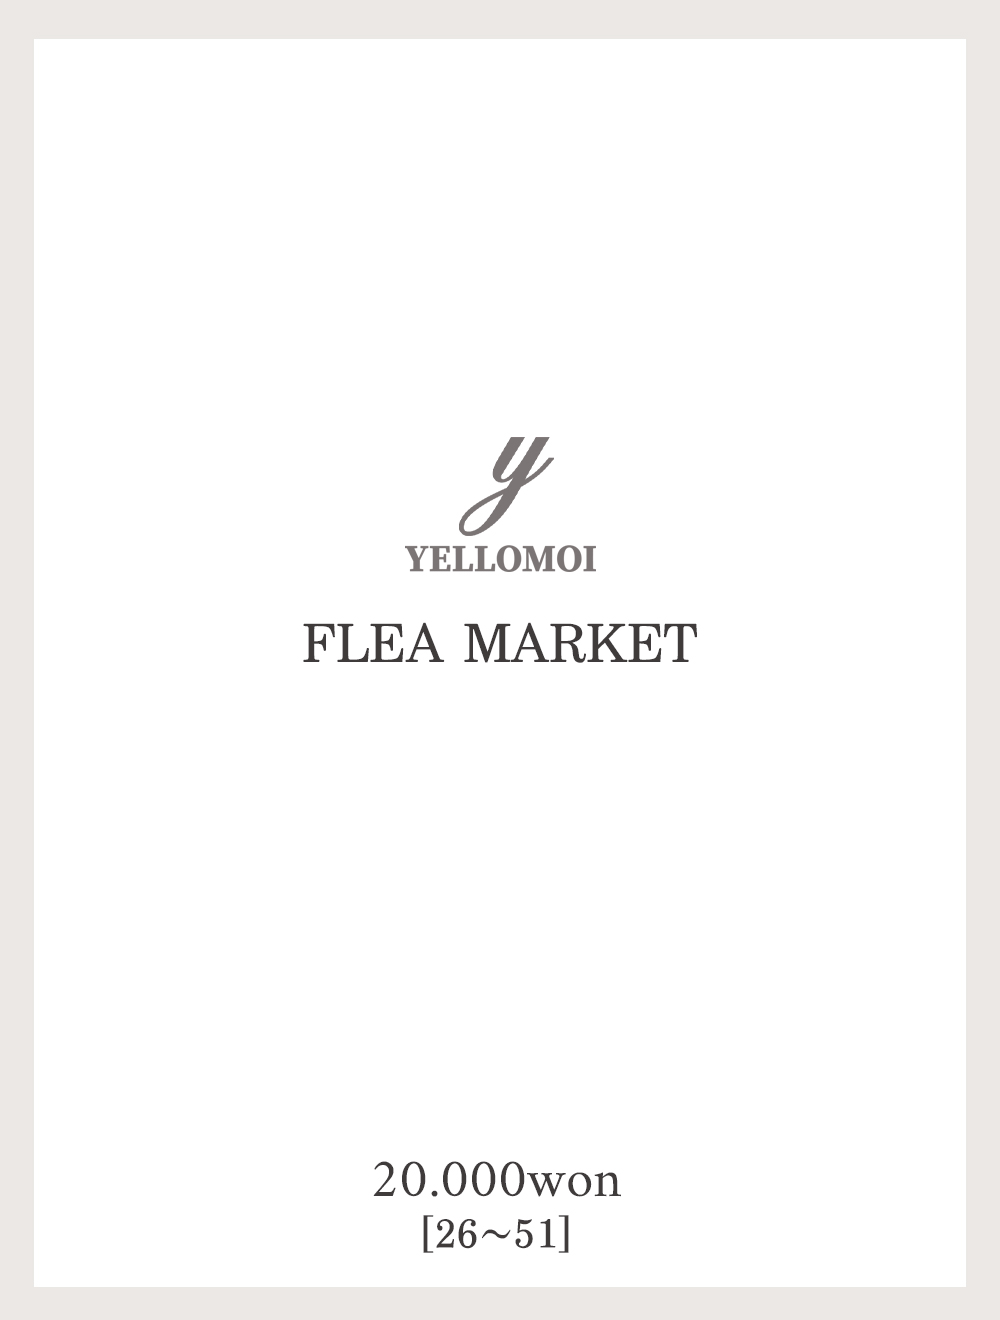 [YELLOMOI]Flea market, 2만원(26-51)